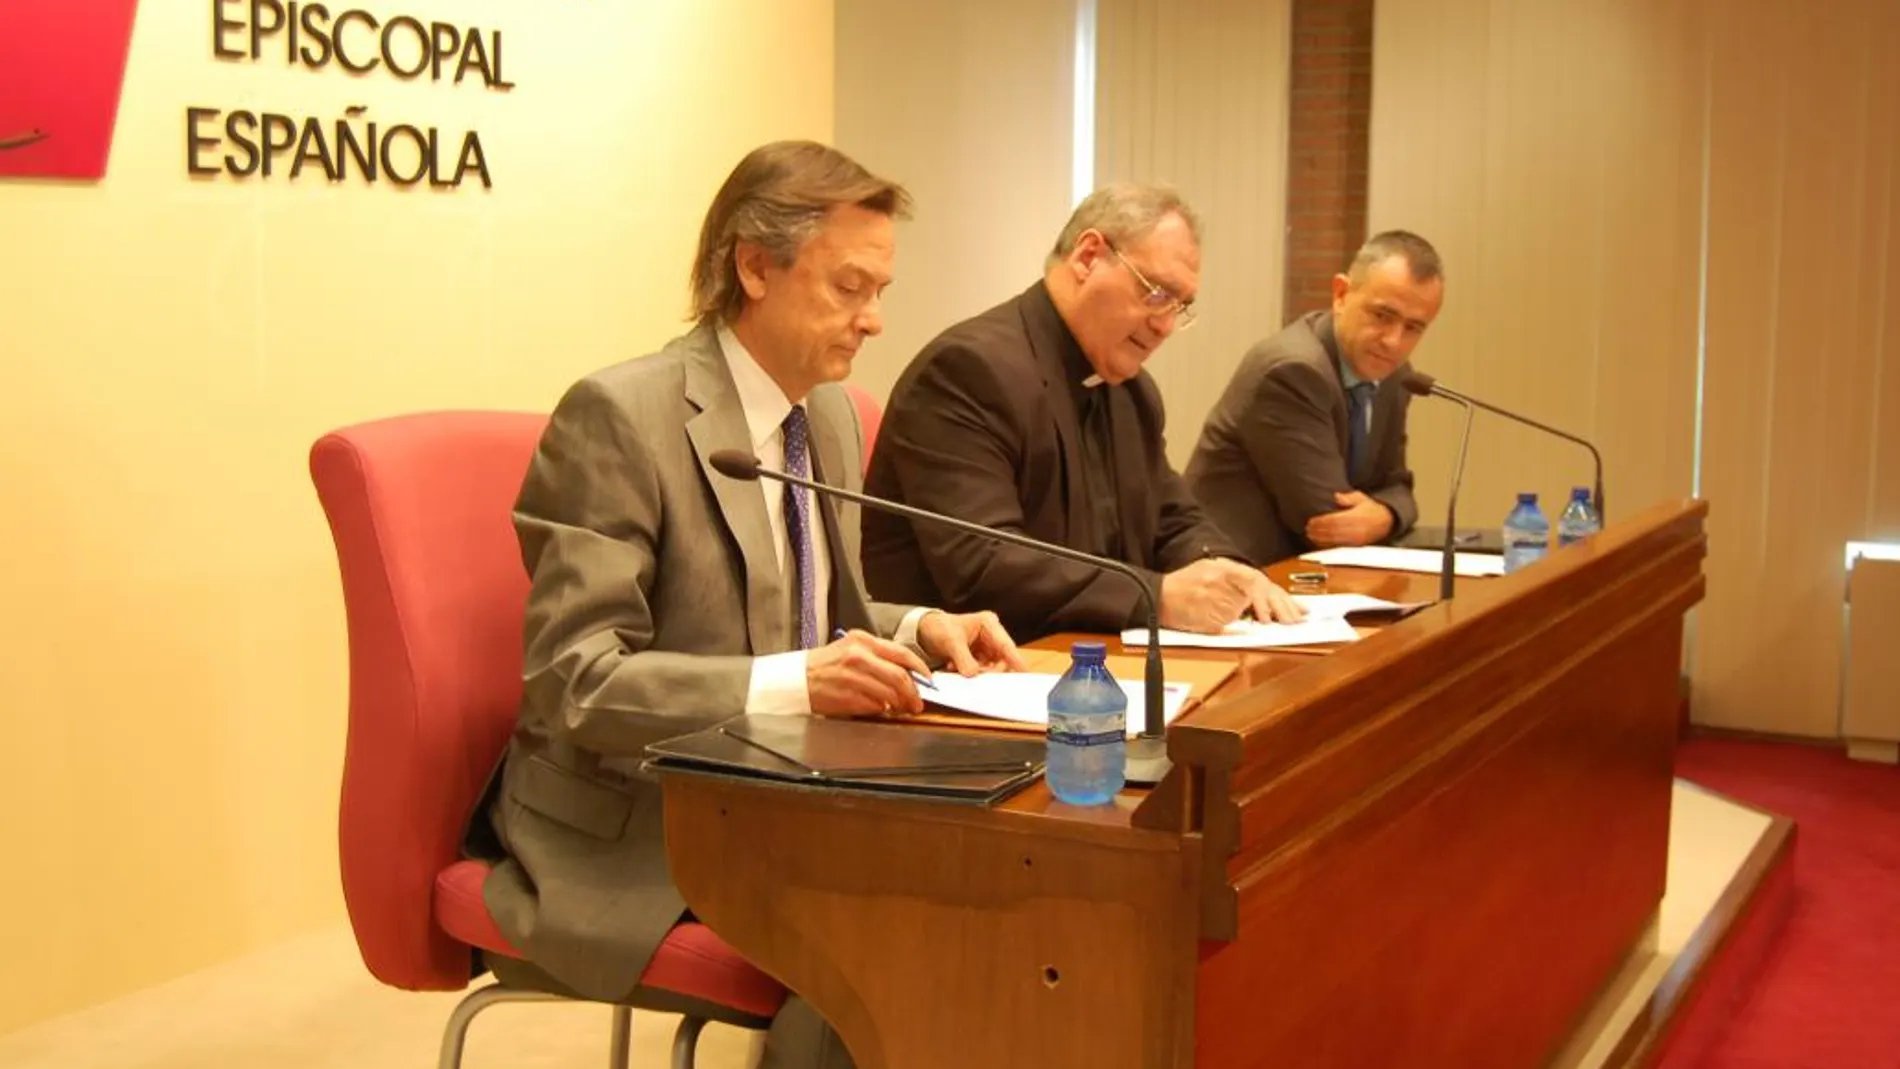 La Conferencia Episcopal Española (CEE) y Transparencia Internacional firmaron este martes un acuerdo de colaboración